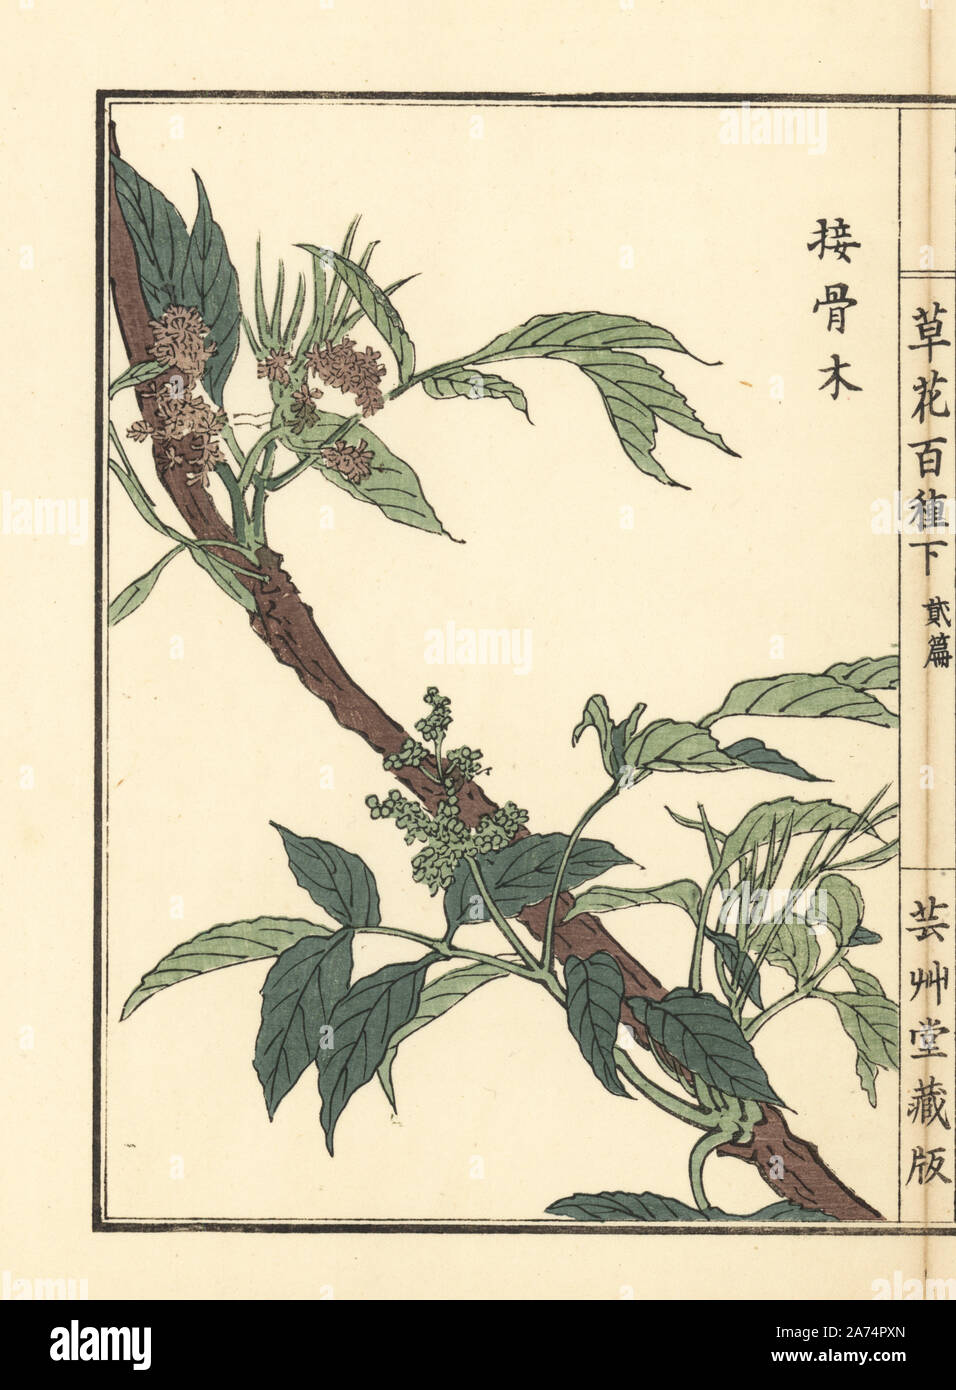 Niwatoko or red elderberry, Sambucus racemosa subsp. sieboldiana. Handcoloured woodblock print by Kono Bairei from Kusa Bana Hyakushu (One Hundred Varieties of Flowers), Tokyo, Yamada, 1901. Stock Photo